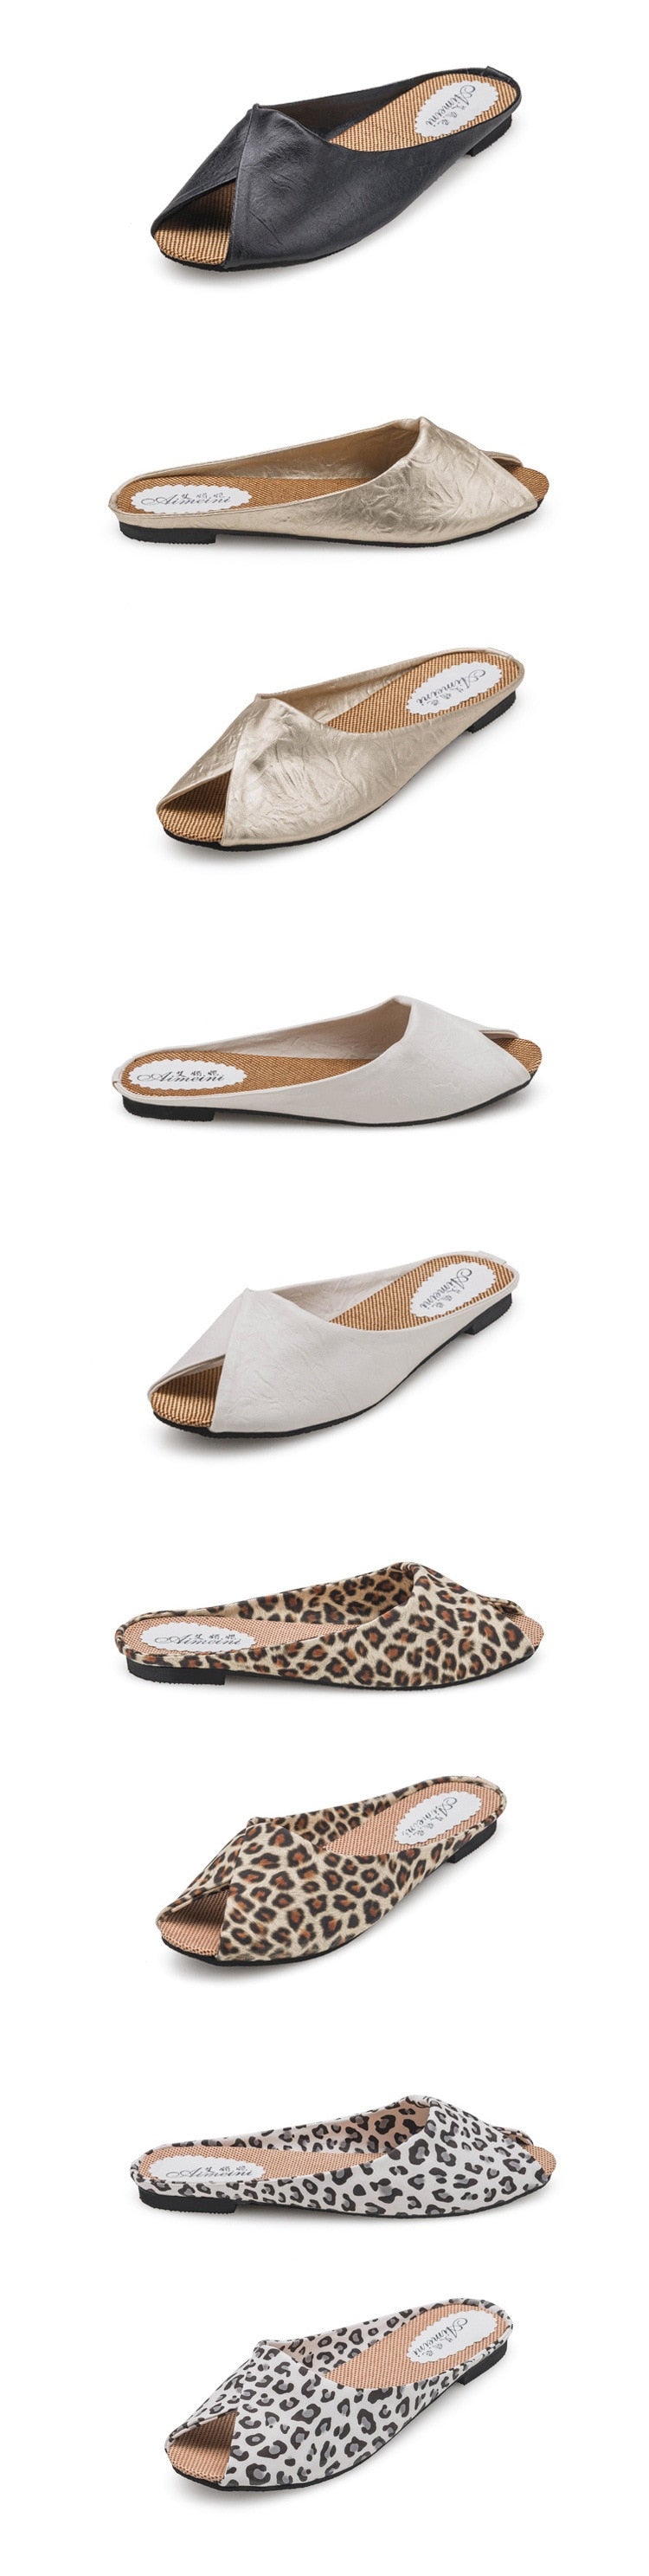 Sandales d'été pour femmes chaussures peep-toe chaussures basses sandales romaines dames tongs pantoufles